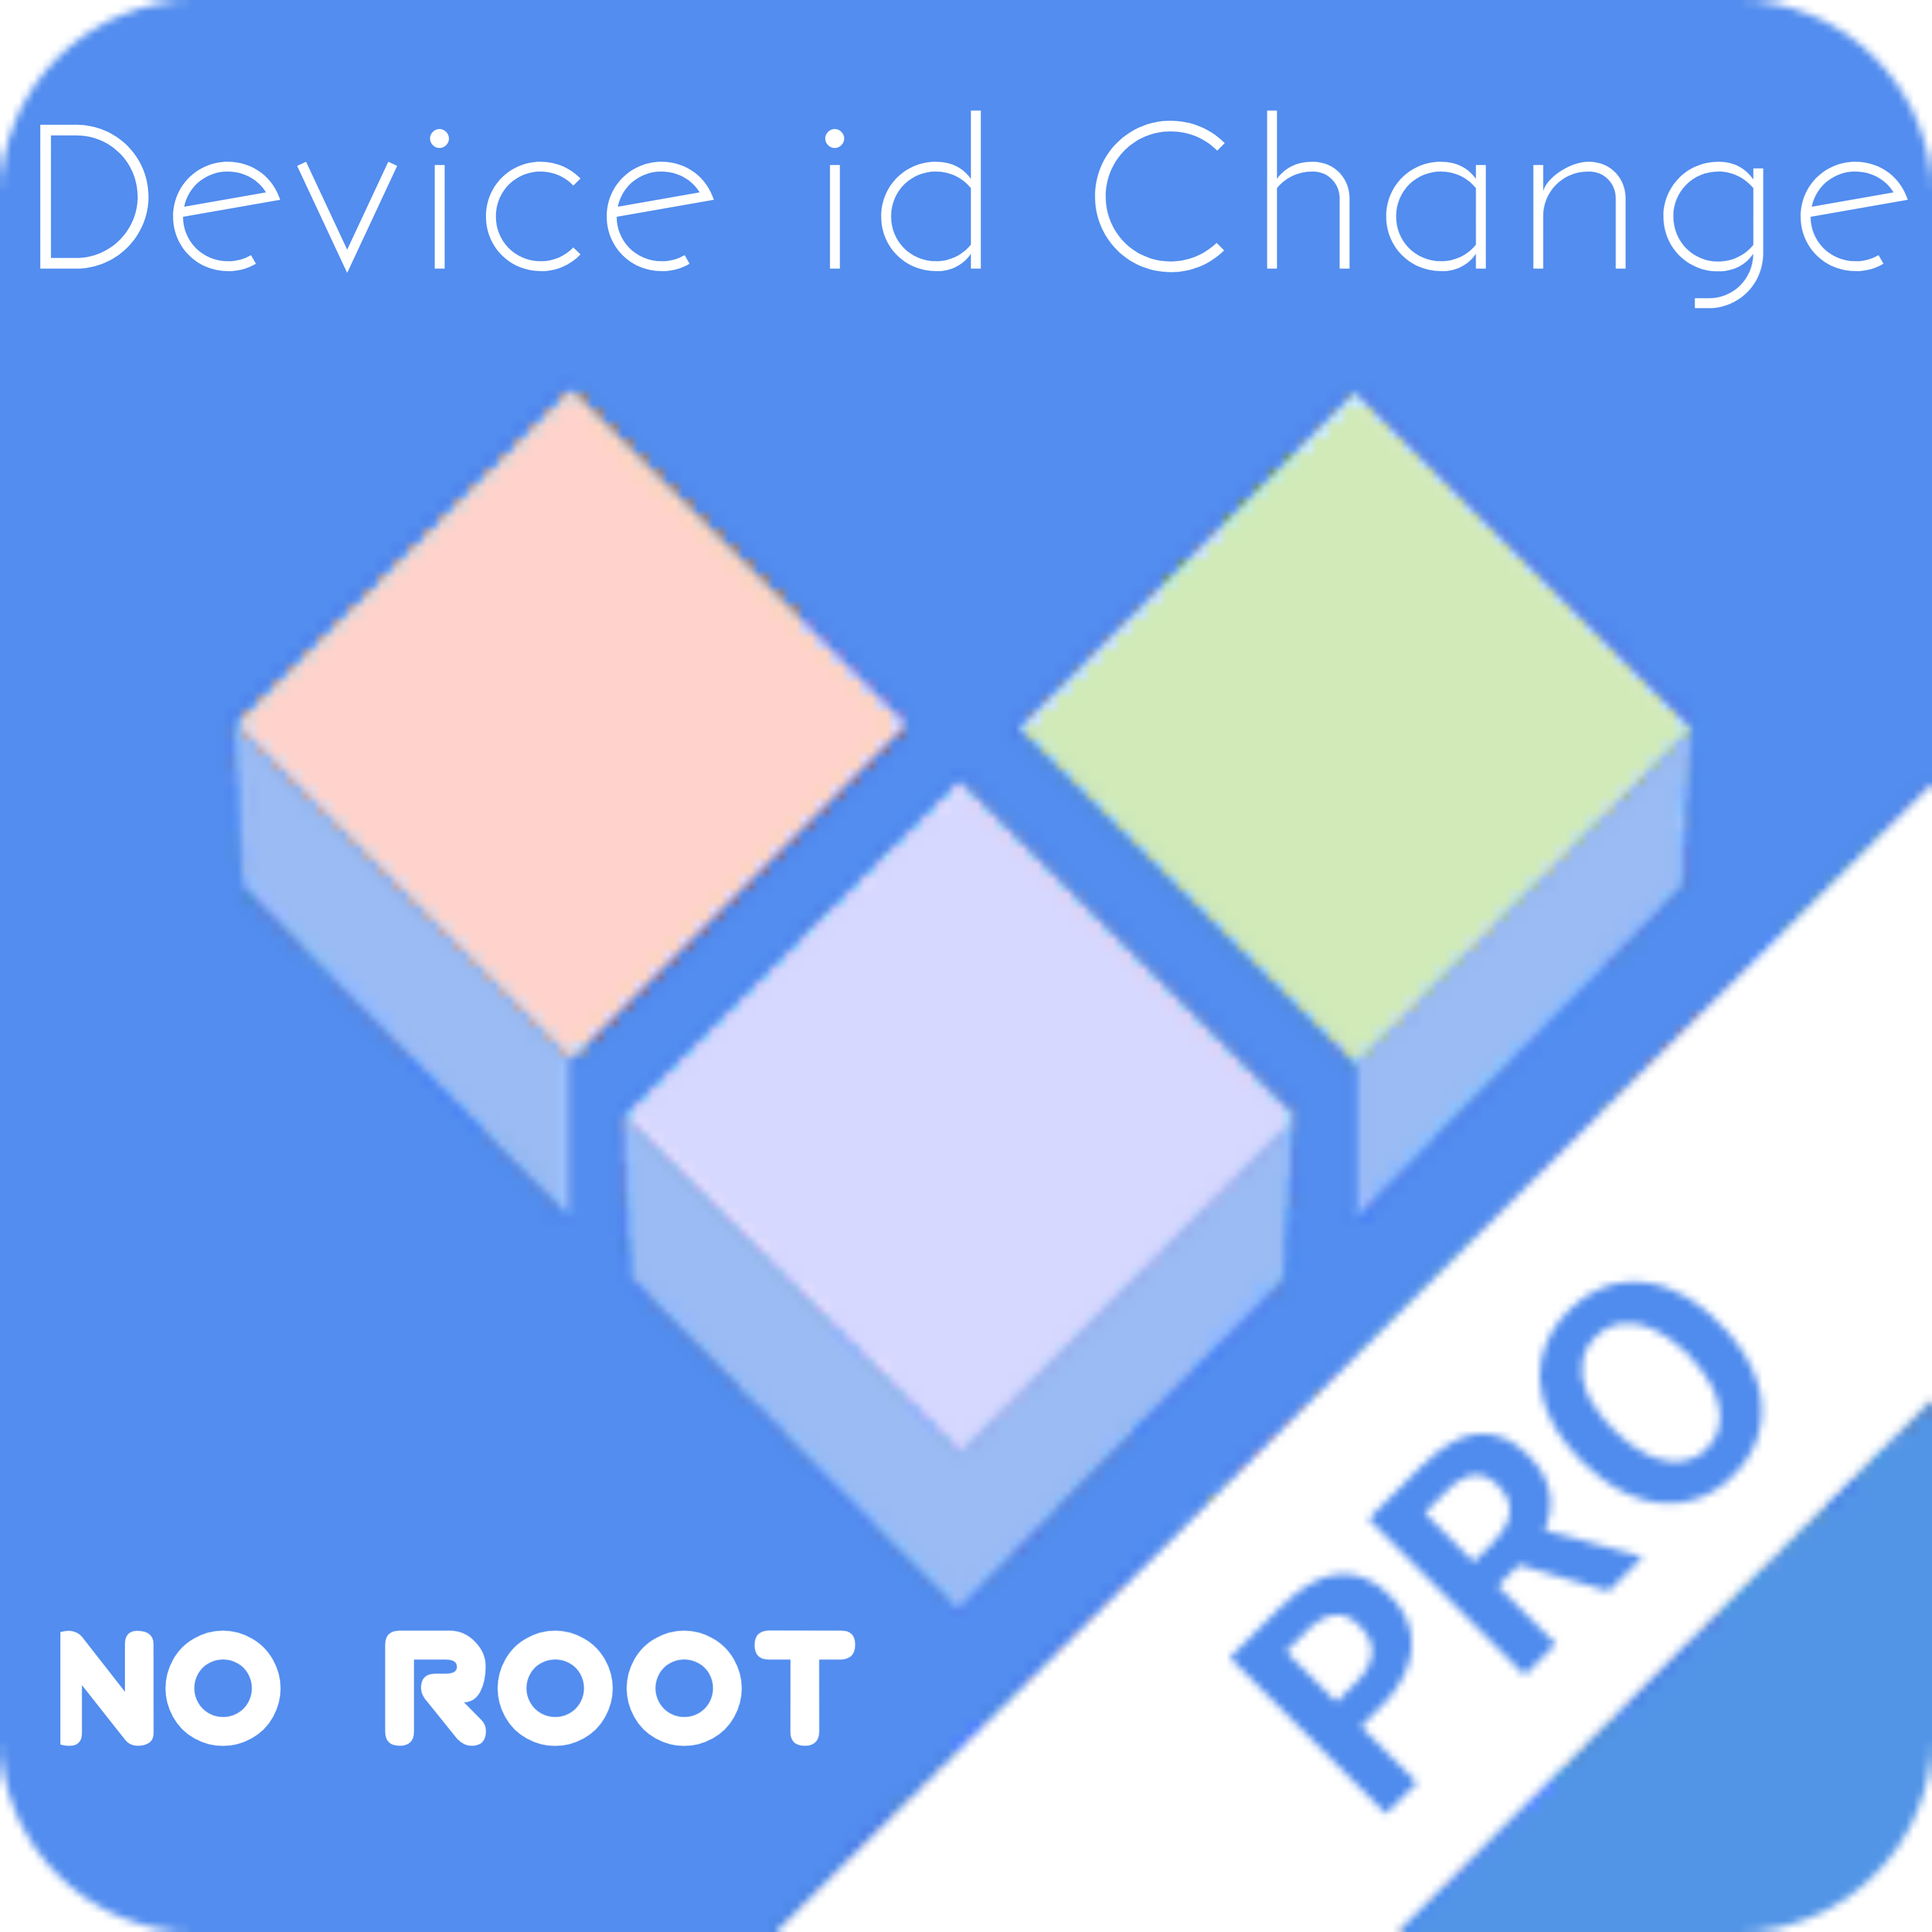 এবার Device id Change করুন এবং যেকোনো Apps এর আনলিমিটেড রেফার করুন [No root]